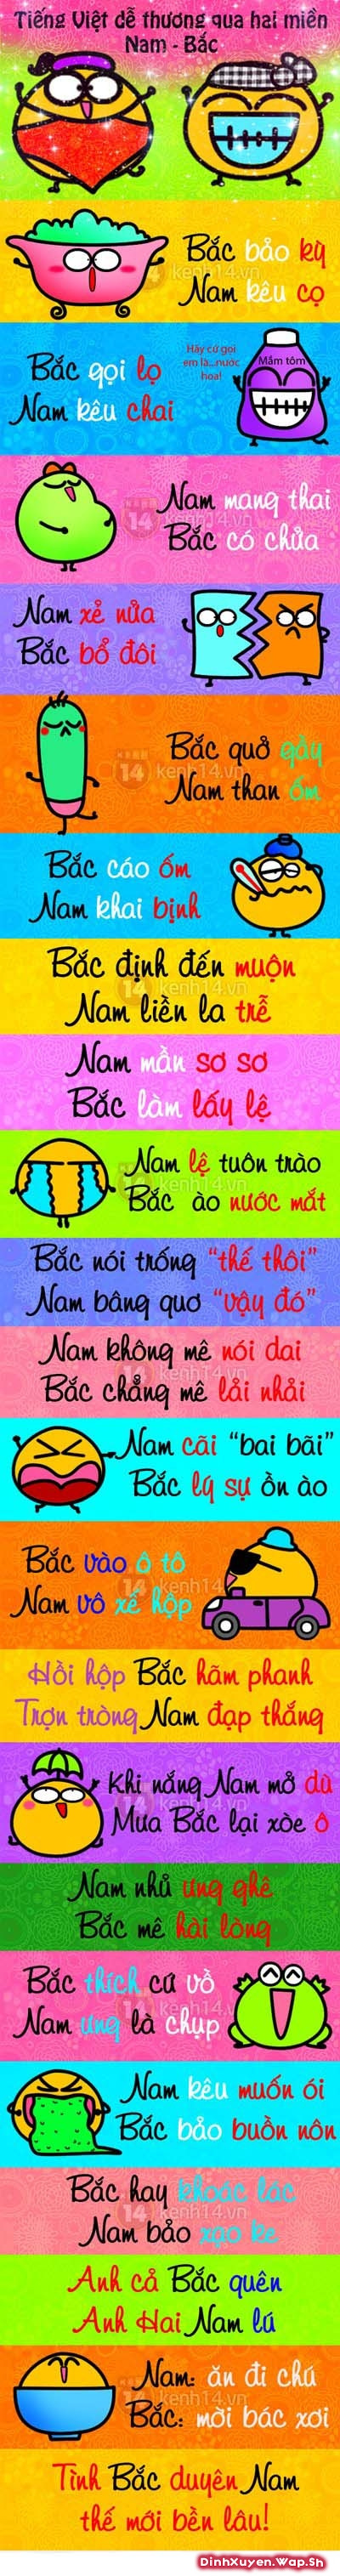 Tiếng Việt 2 miền vui